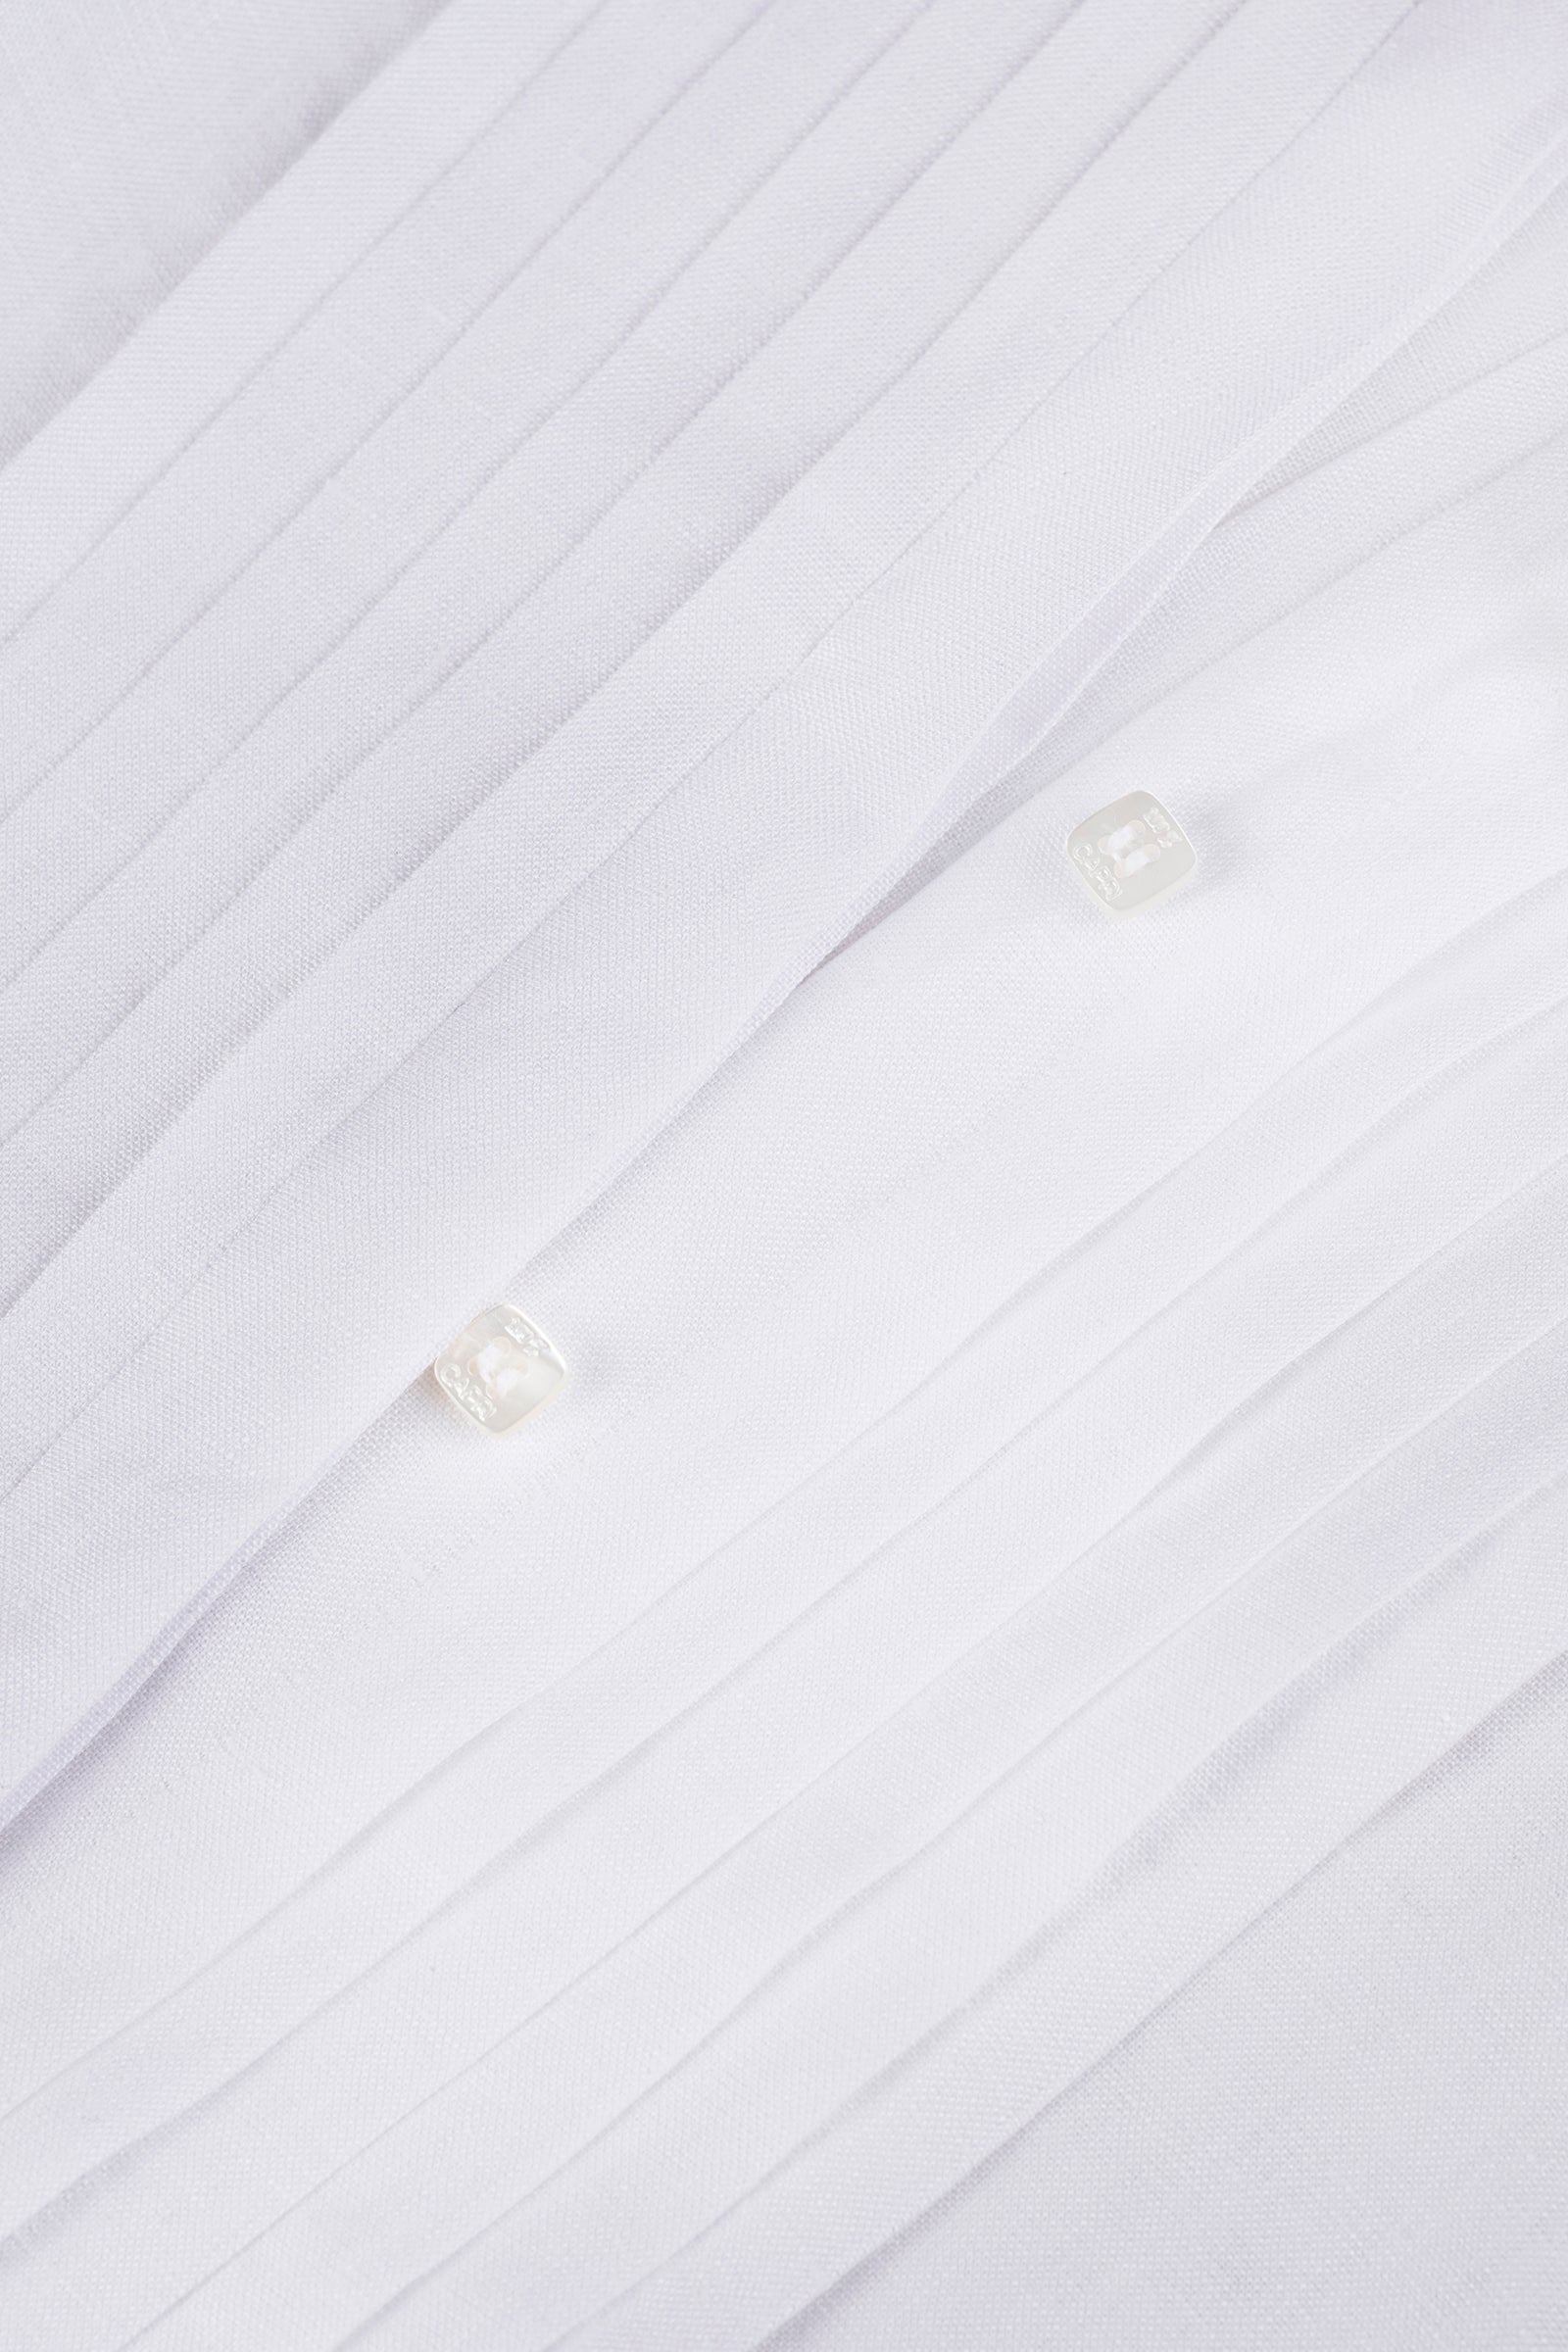 Camicia Plissé Long white details 100% Capri